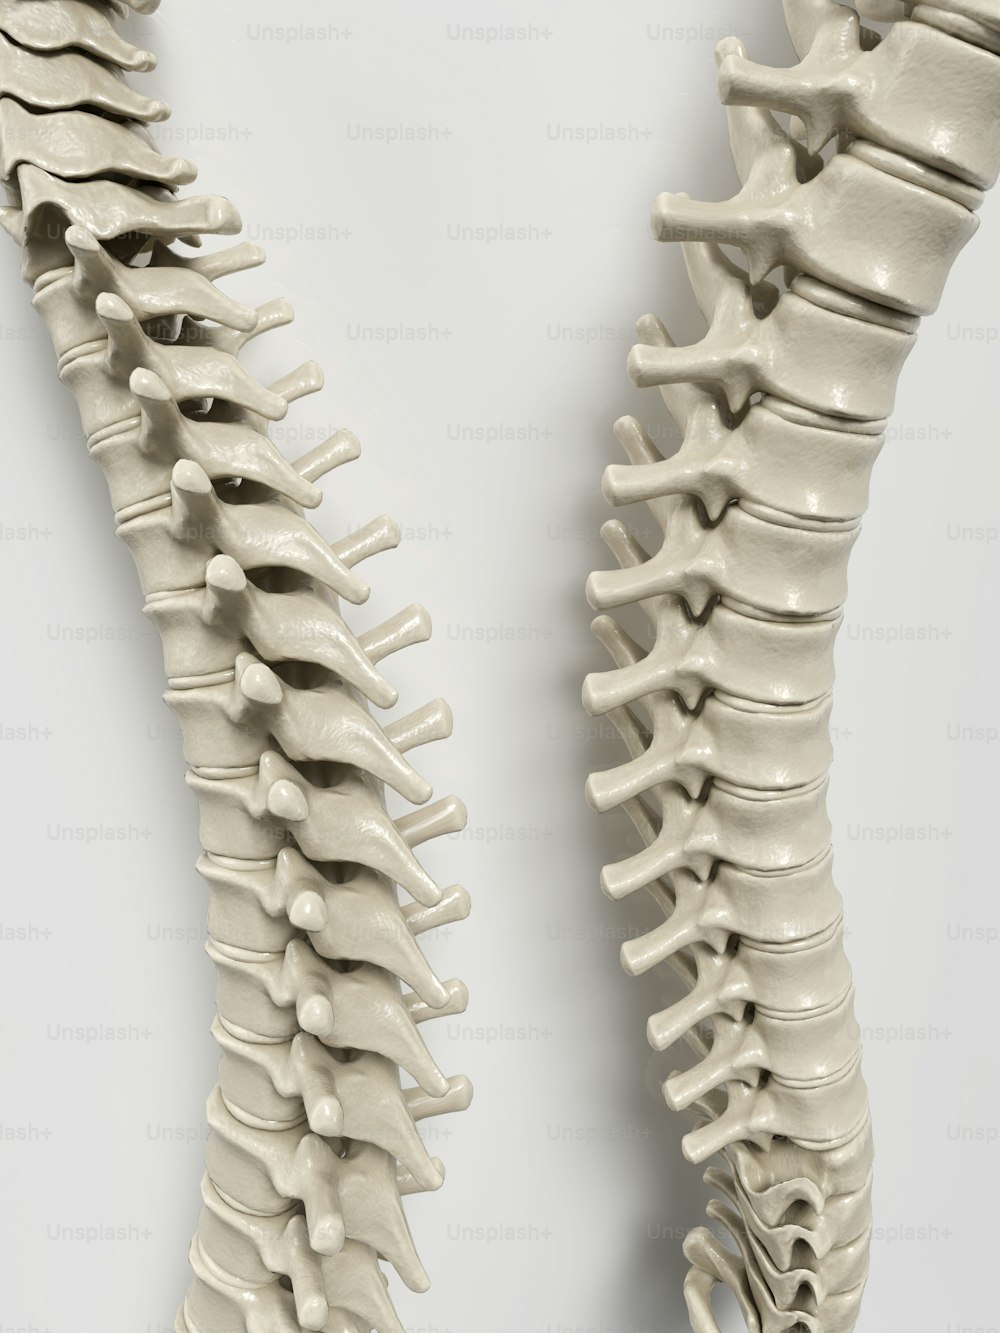 Un modelo de la parte posterior de un esqueleto humano